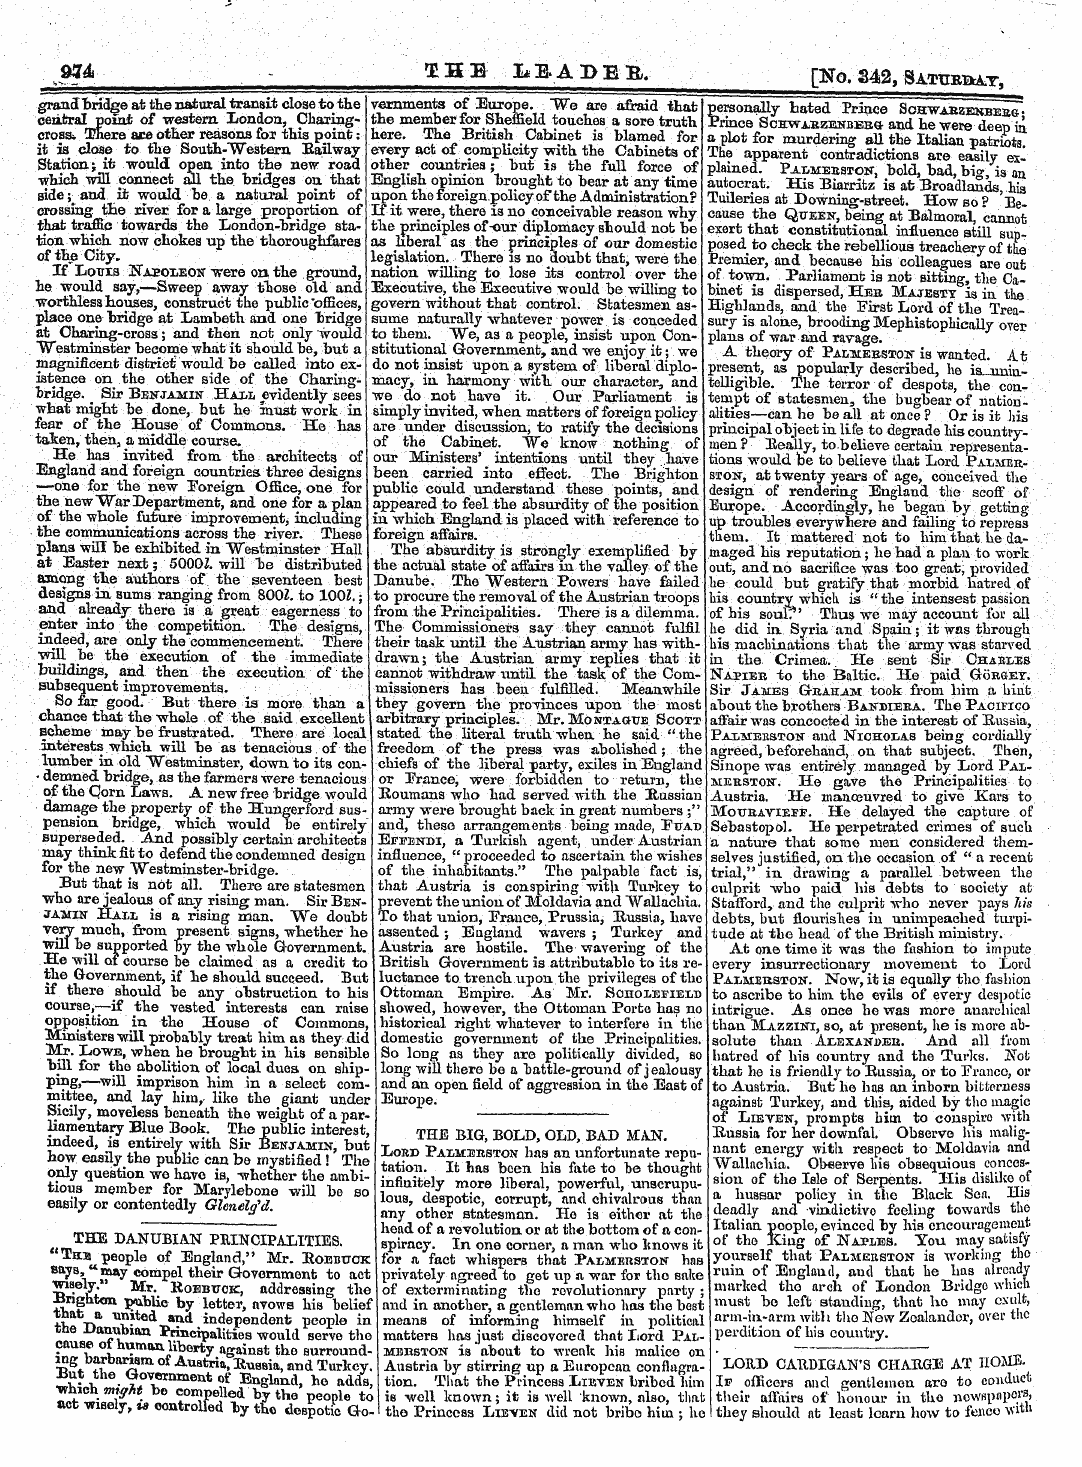 Leader (1850-1860): jS F Y, 2nd edition - Fffo Oehe Lbabej, [No.342, Satpbbat,